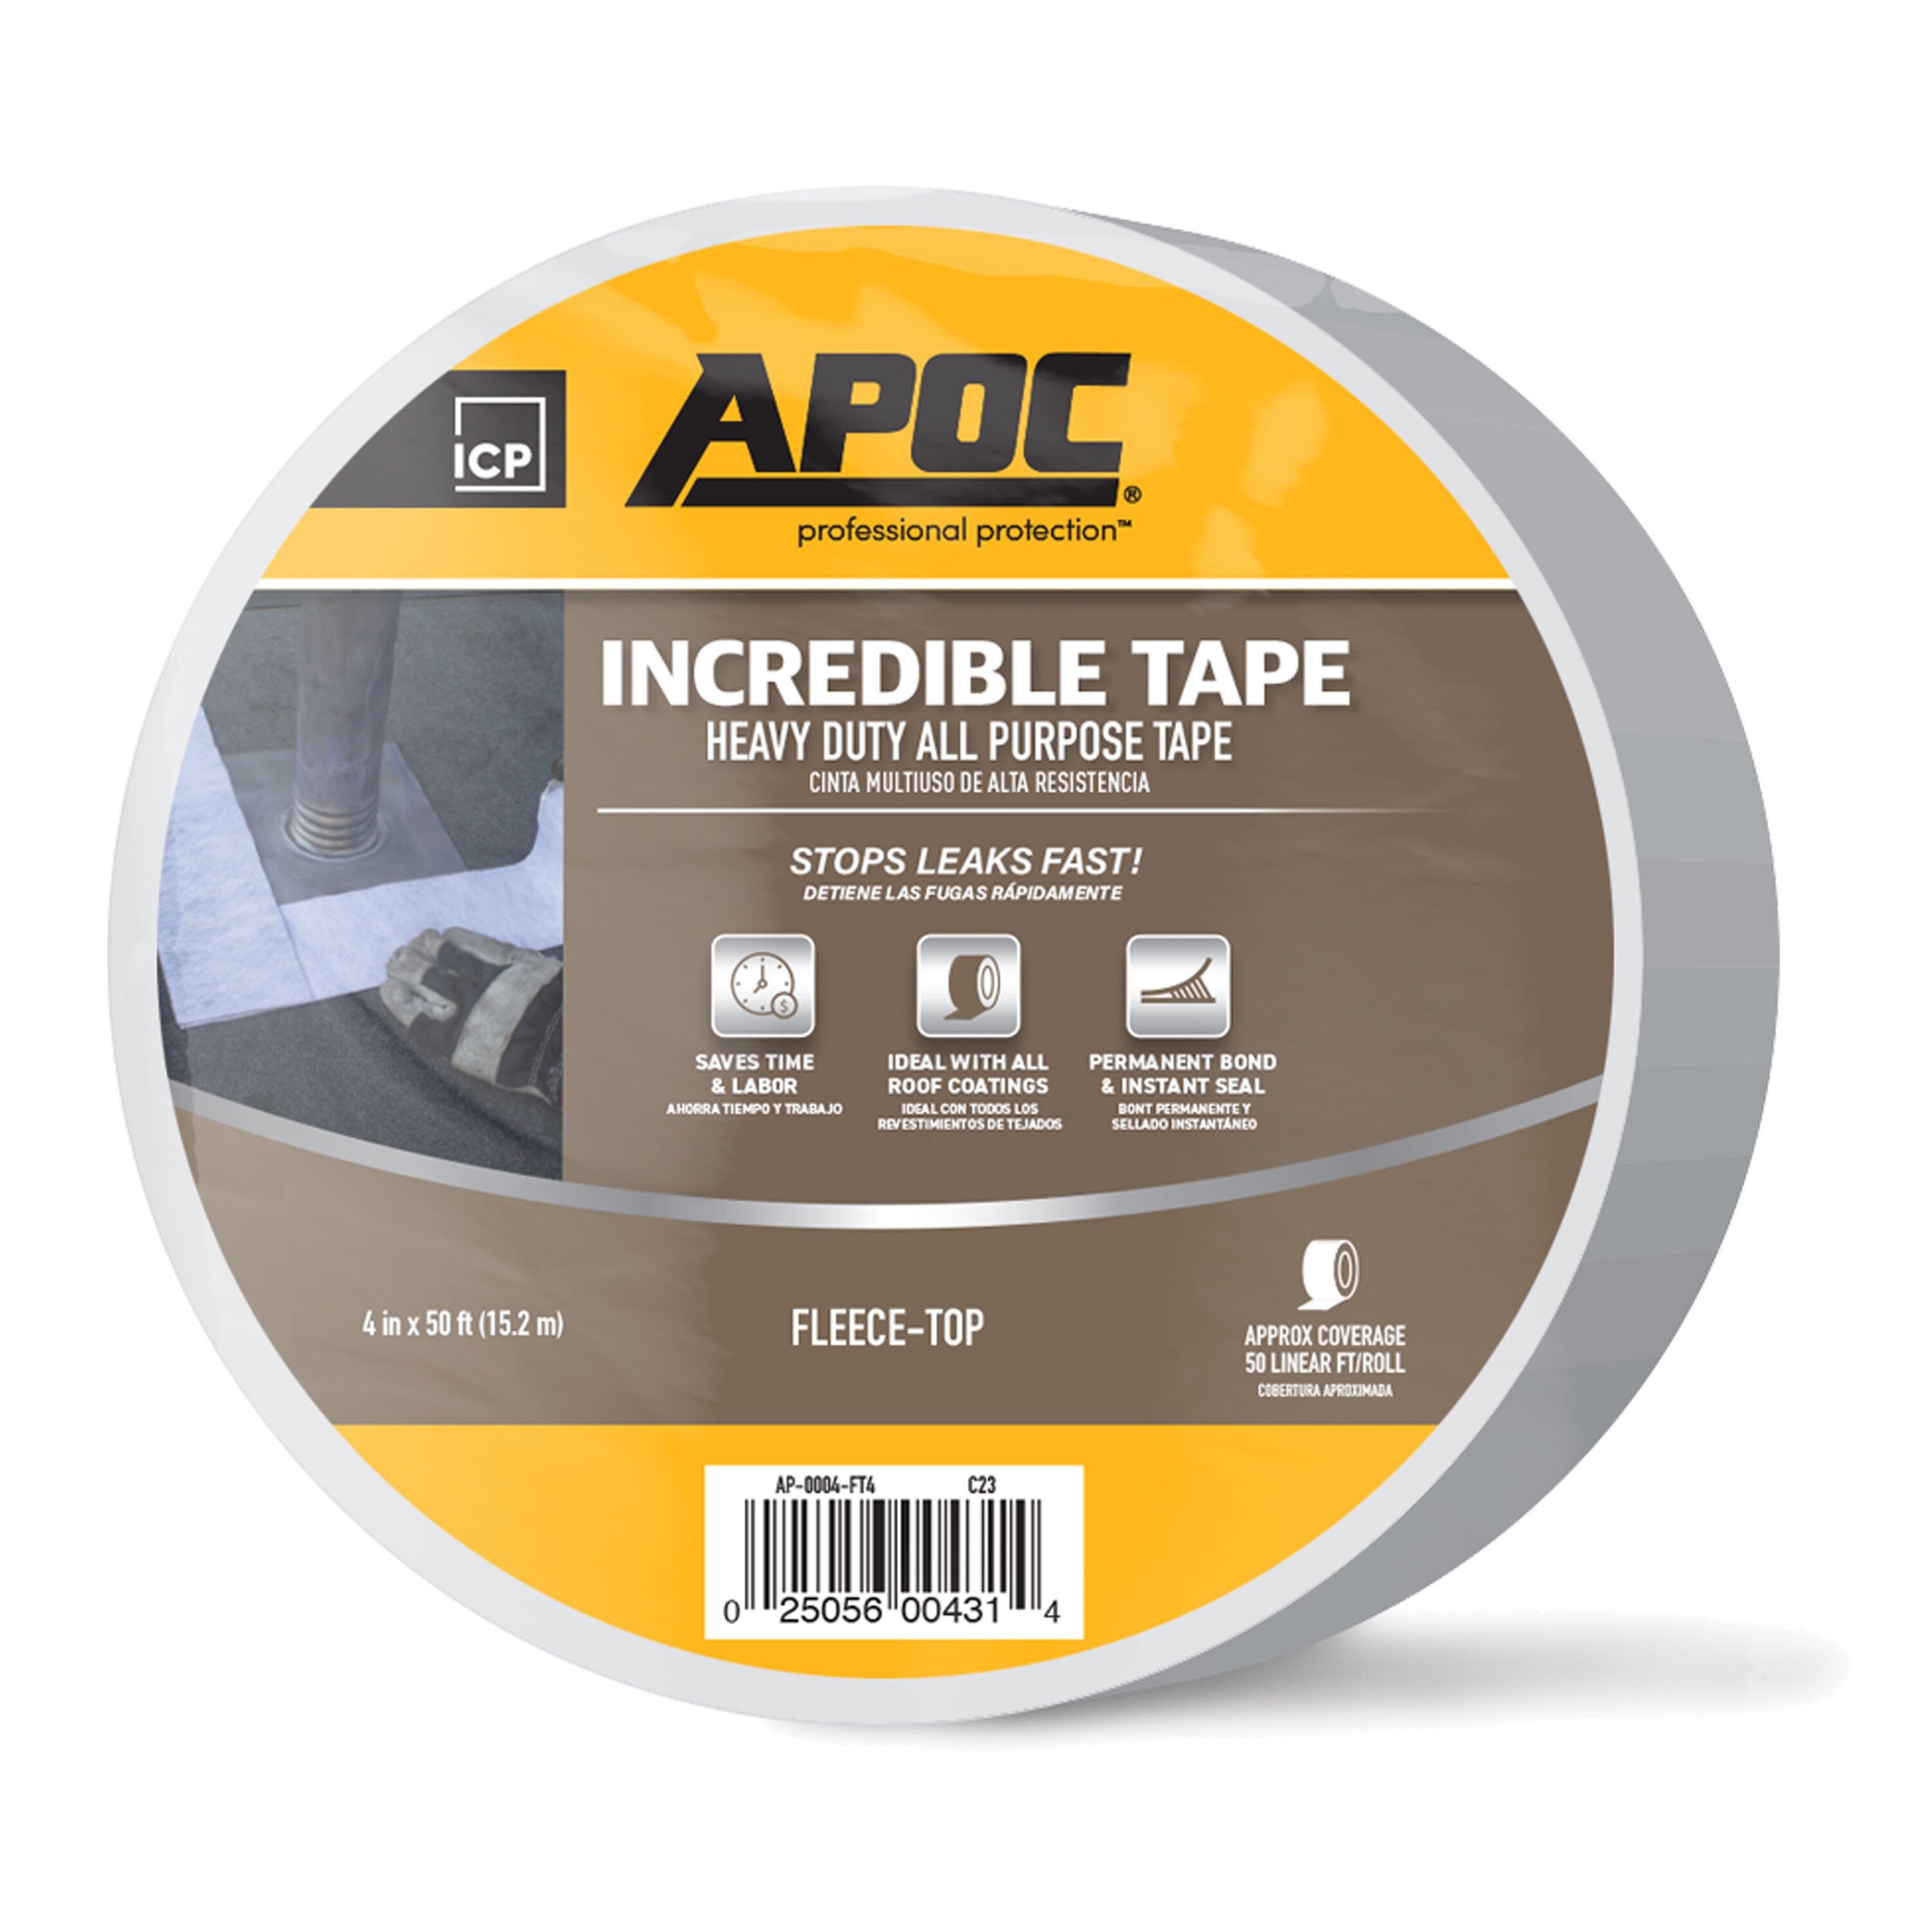 Tape Tearer - The Ultimate Flexible Tape Dispenser and Tape Gun